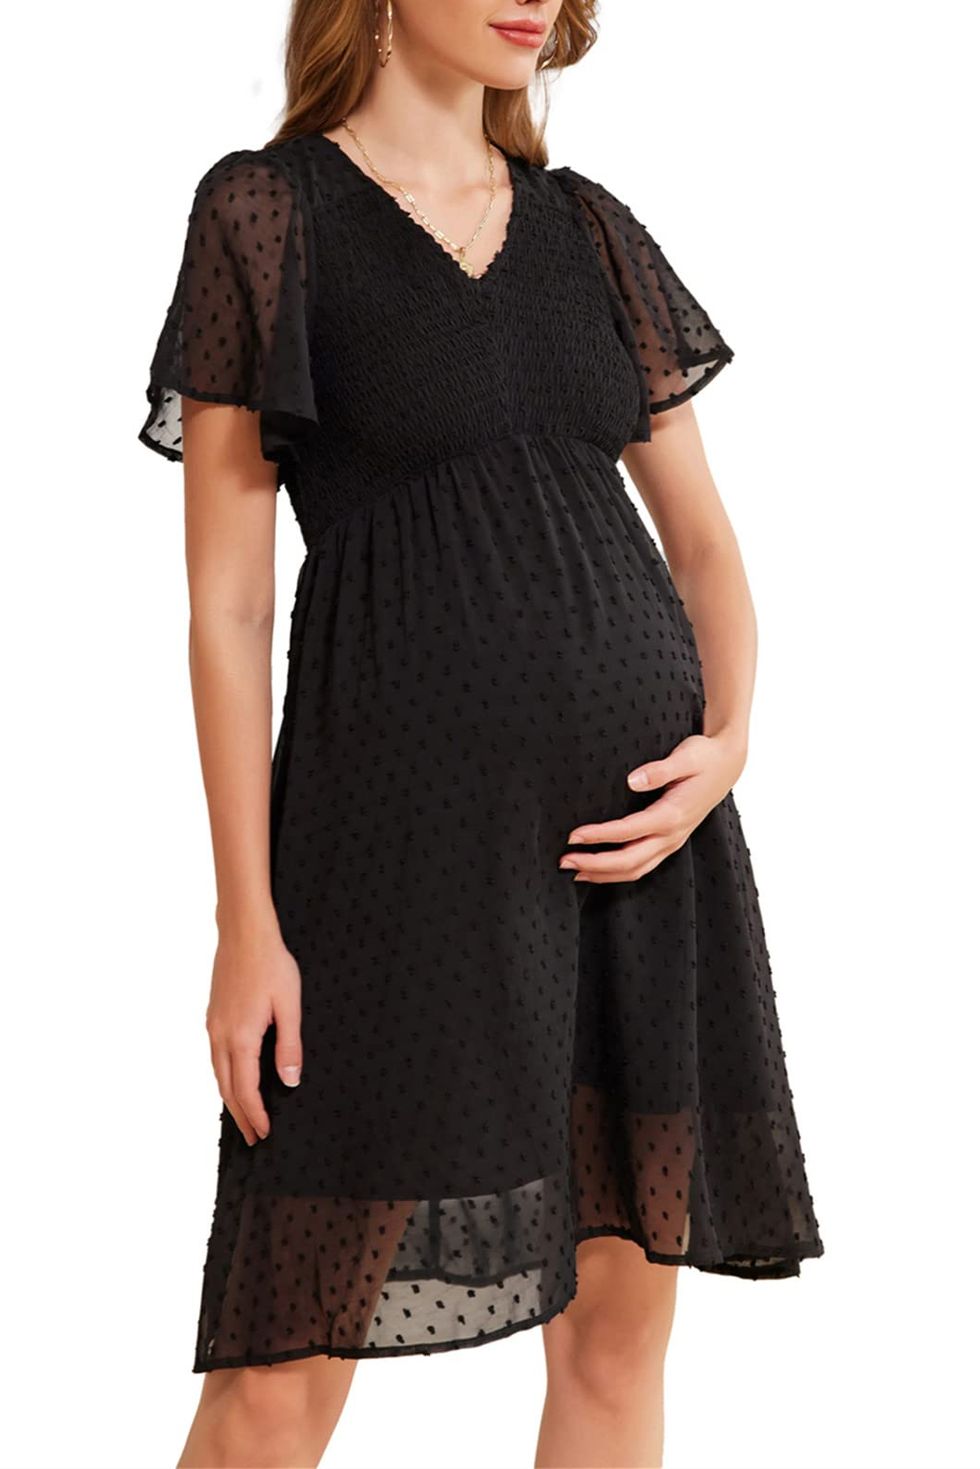 Women Maternity Summer Dress